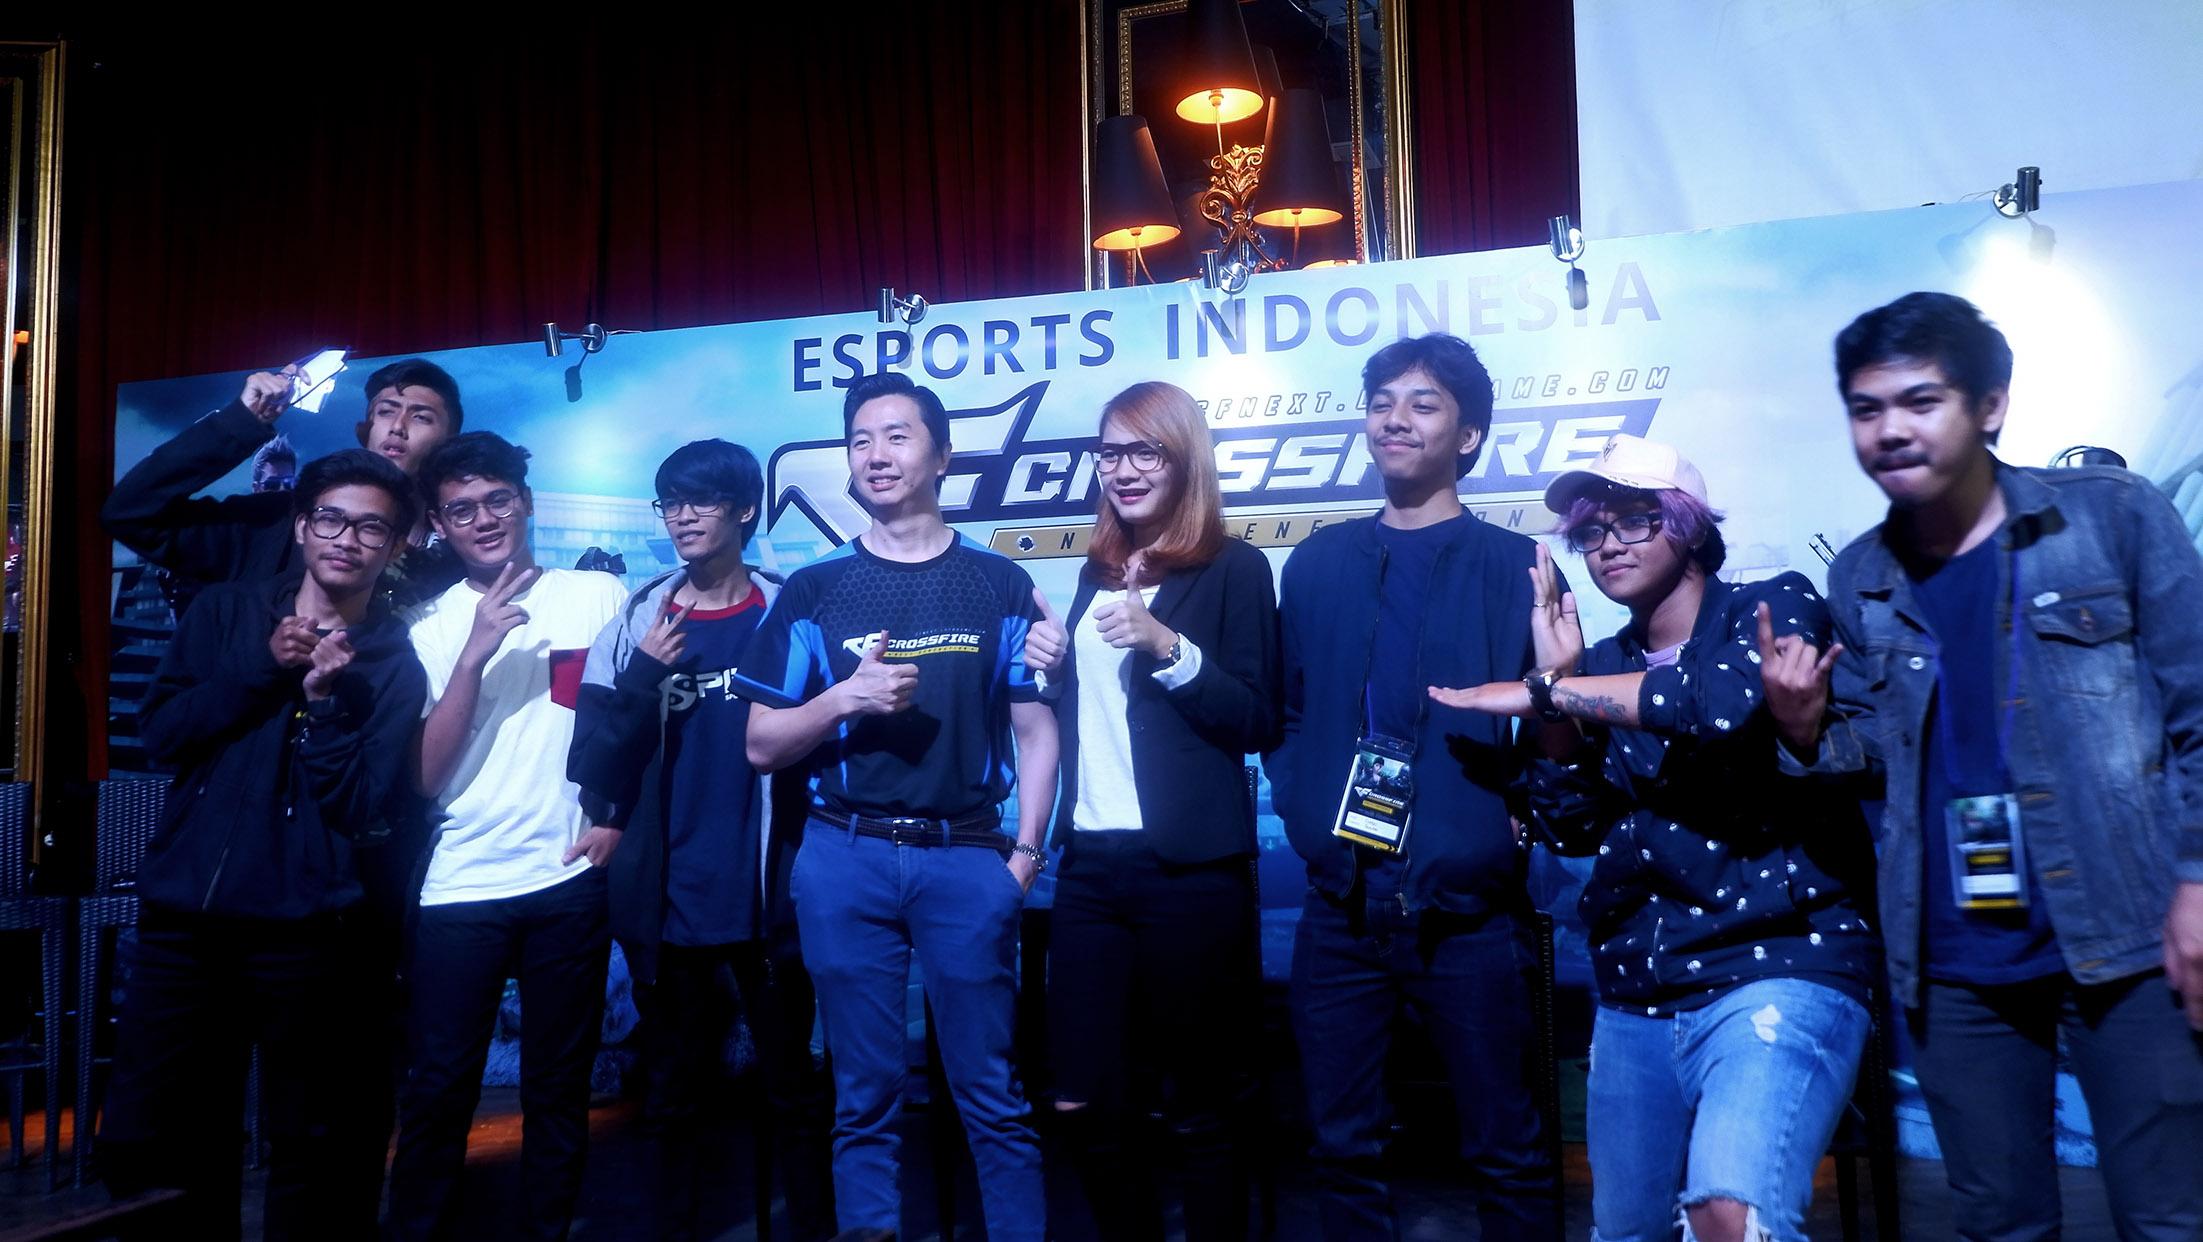 Lytogame Umumkan Roadshow Esports ke 16 Kota Indonesia Bersamaan dengan Peluncuran Crossfire Next Generation